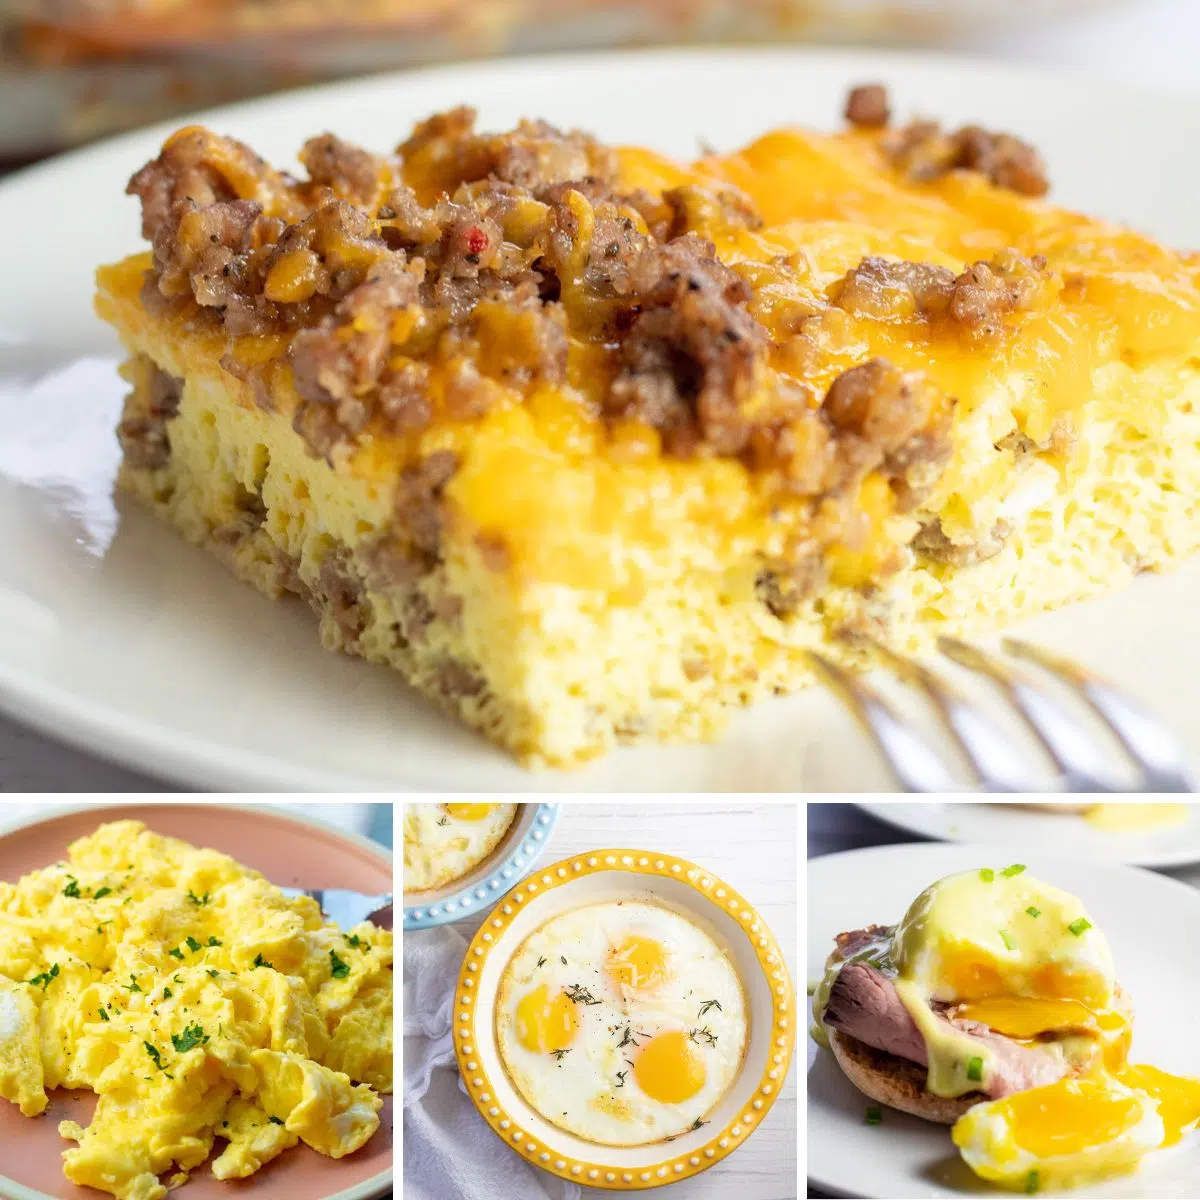 أفضل وصفات إفطار بيض مجمعة مع 4 أطباق مميزة.